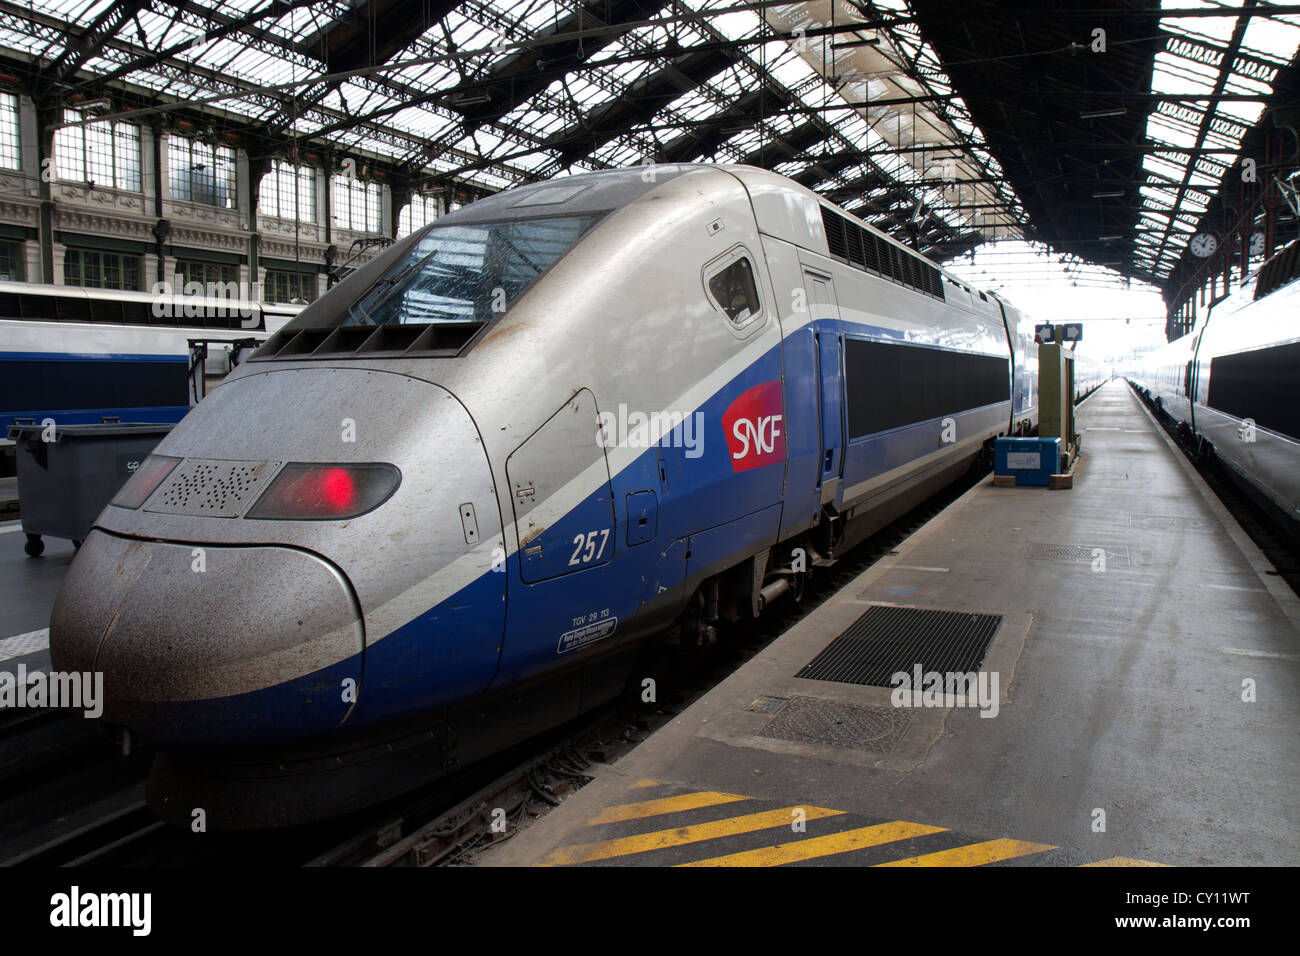 Tren de alta velocidad francés SCNF (TGV) en la estación de tren Gare de Lyon en París, Francia Foto de stock